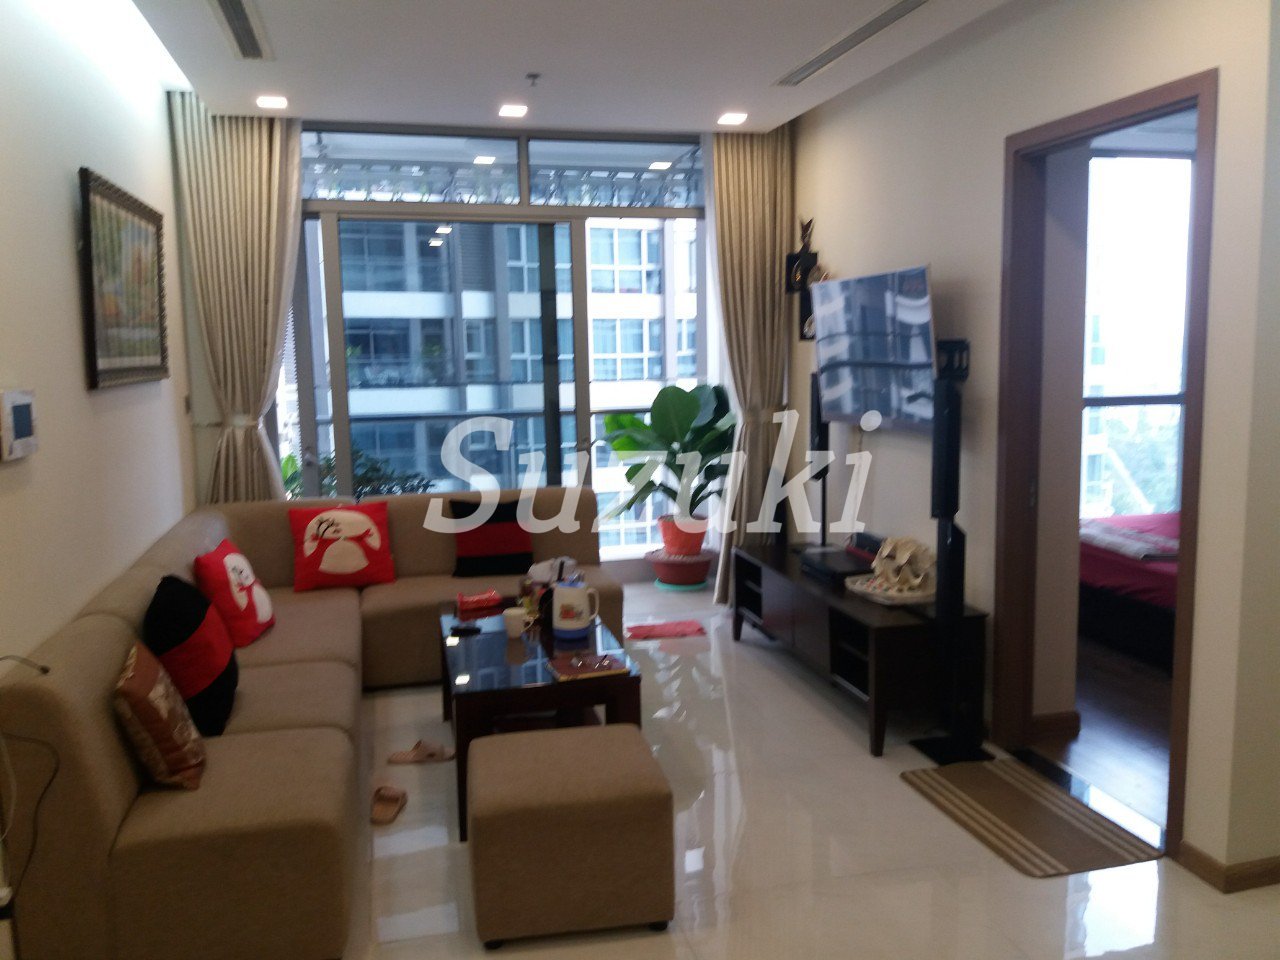 胡志明市深受外國人歡迎的公寓Vinhomes Central Park | 2LDK出租75平方米-1150$-ST105P2618